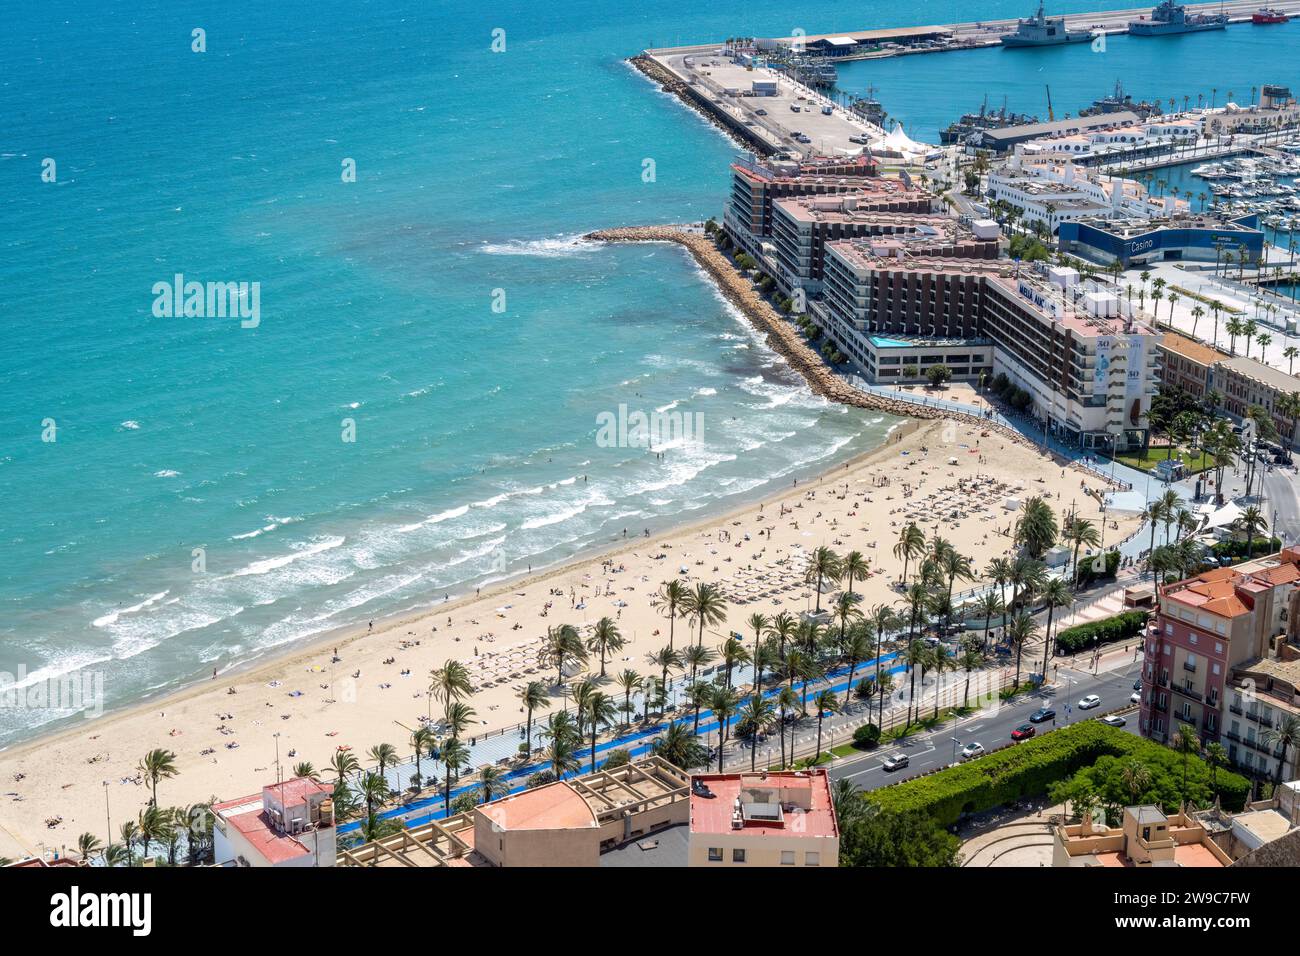 Spiaggia con persone sdraiate e nuotate, sulla sabbia e nel mare, vicino al porto di Alicante. Foto di alta qualità Foto Stock